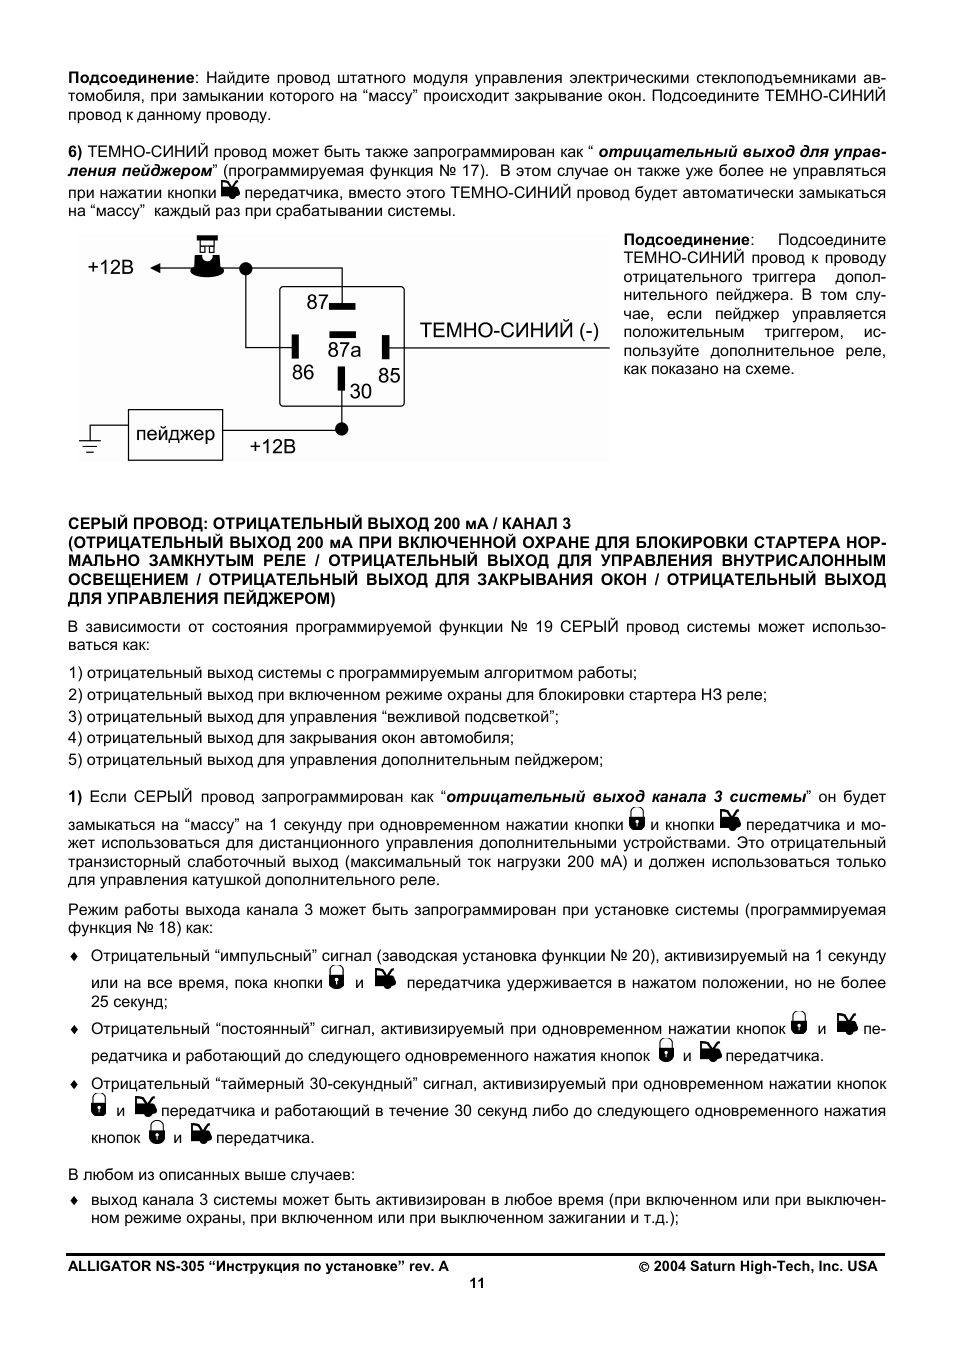 Аллигатор 2 way auto control инструкция на русском языке